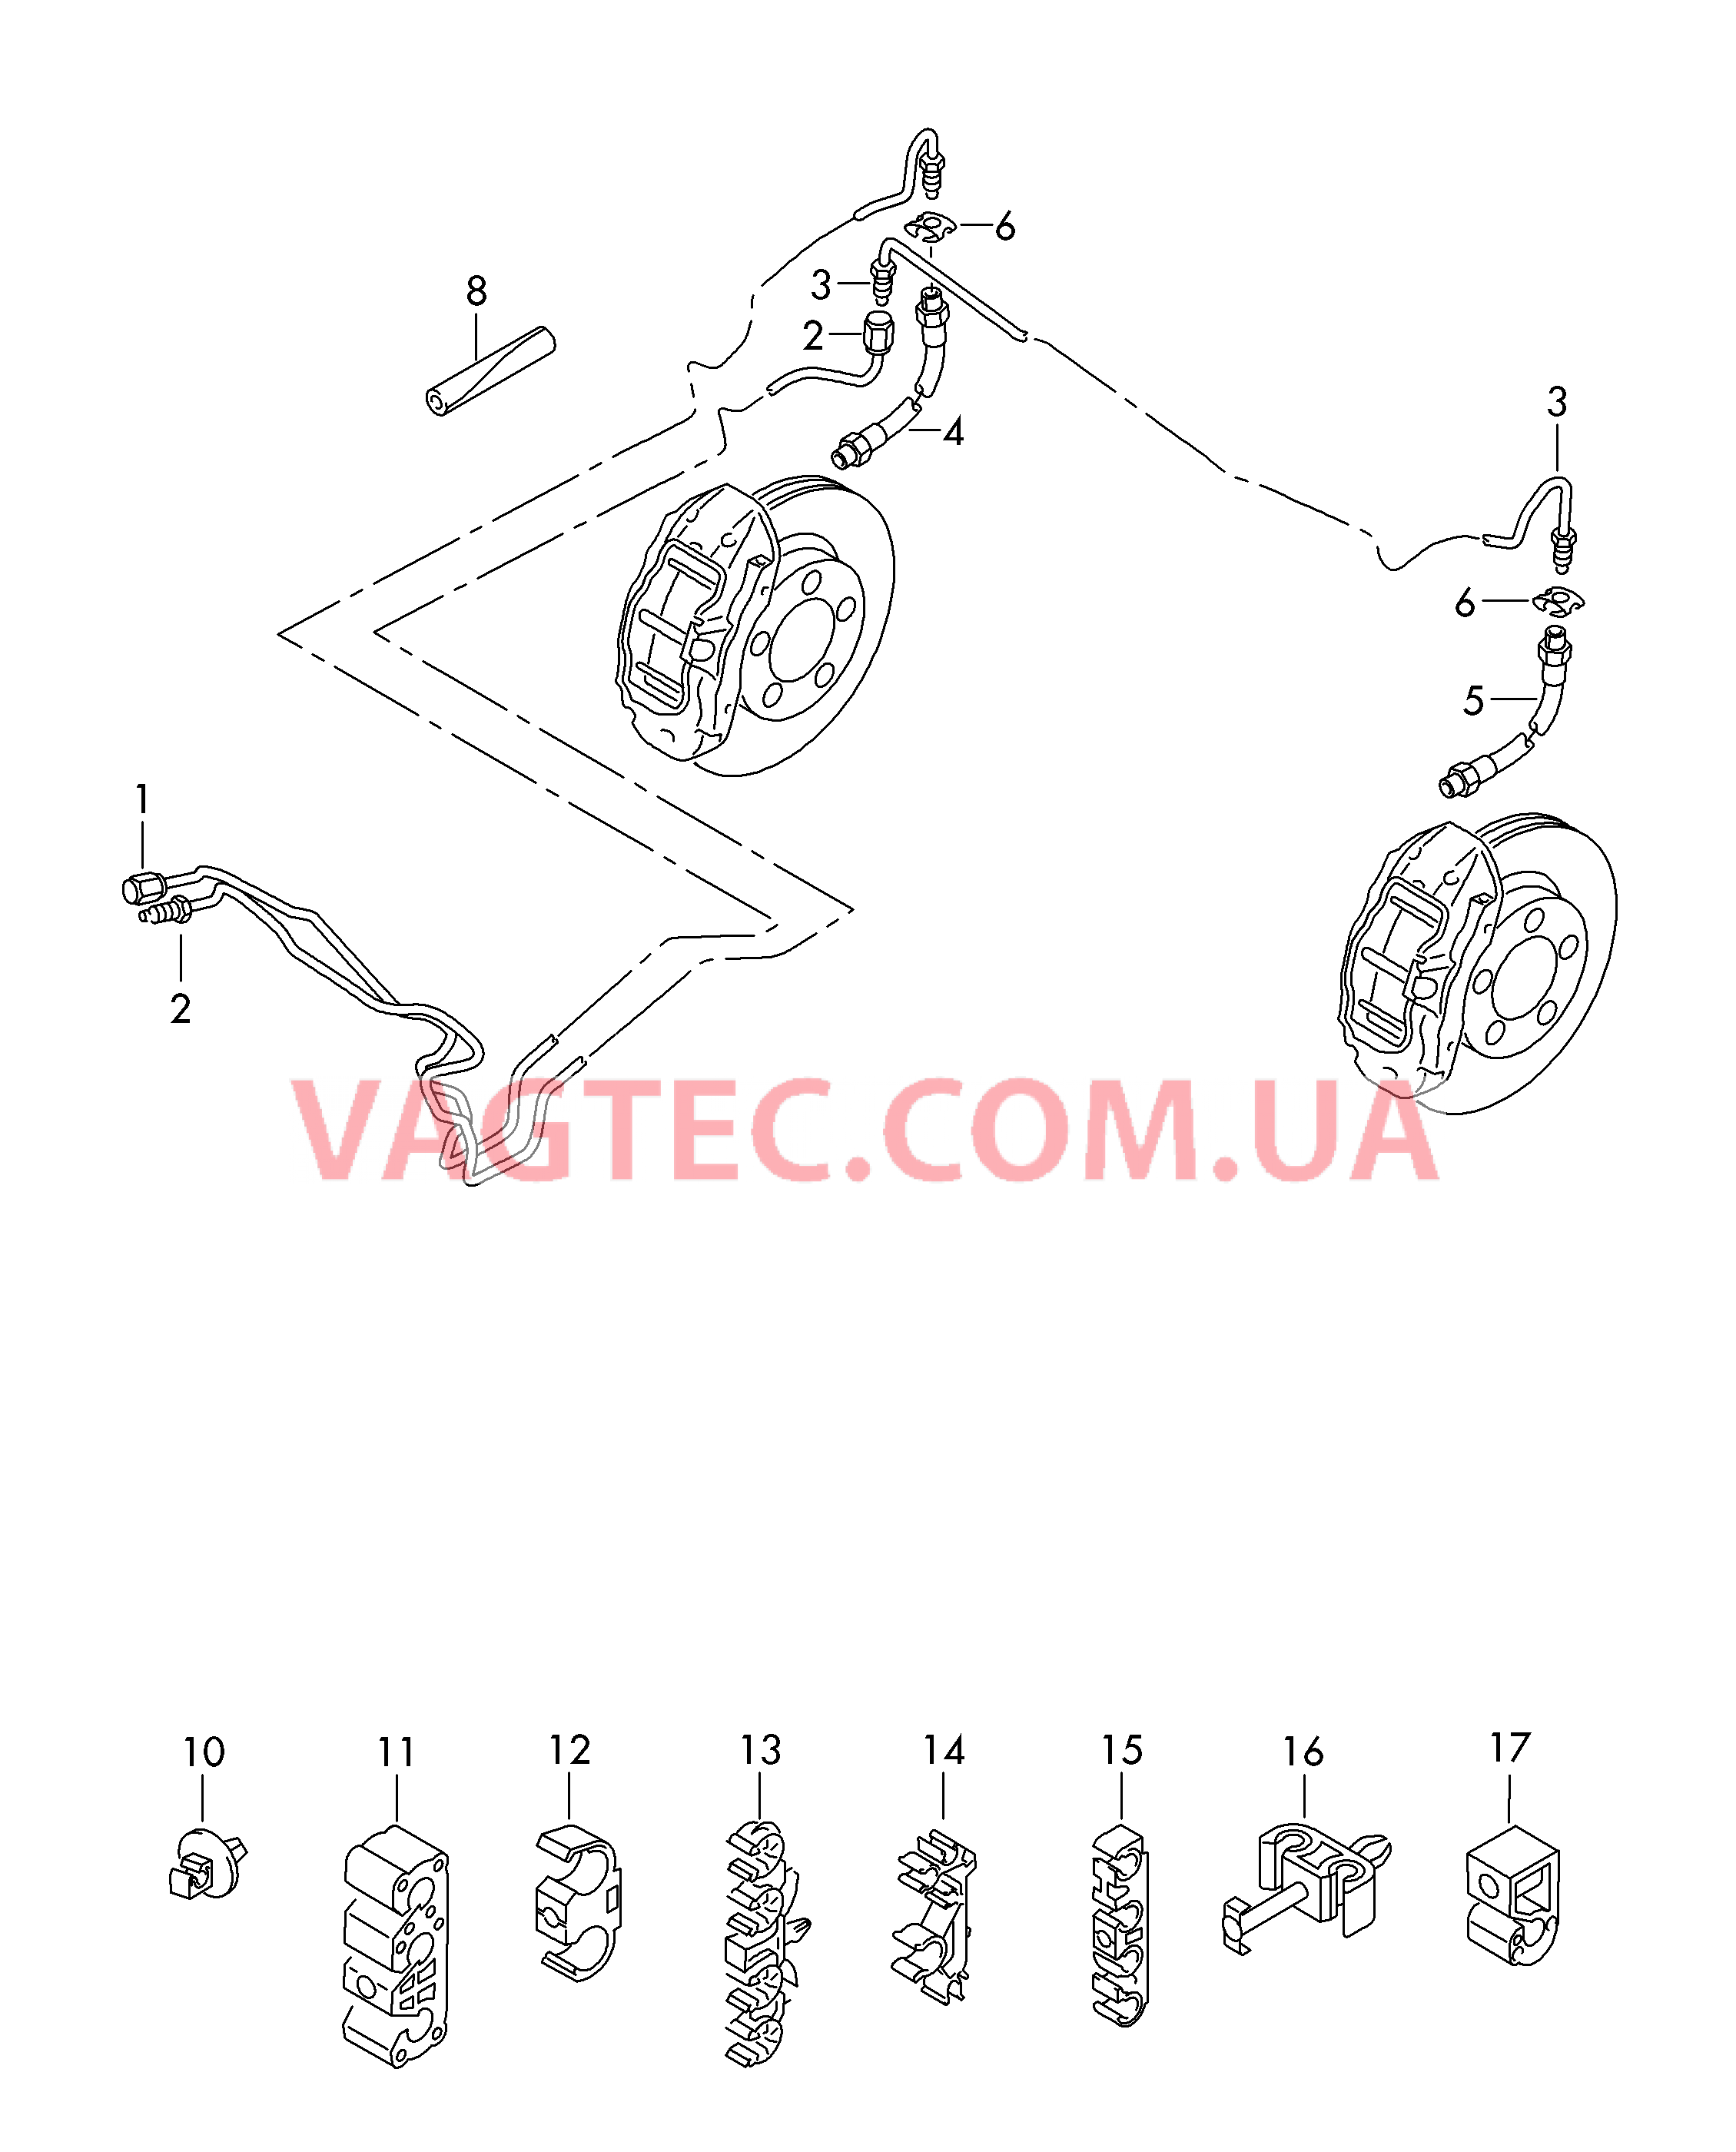 Тормозная трубка Тормозной шланг  для VOLKSWAGEN Touareg 2017